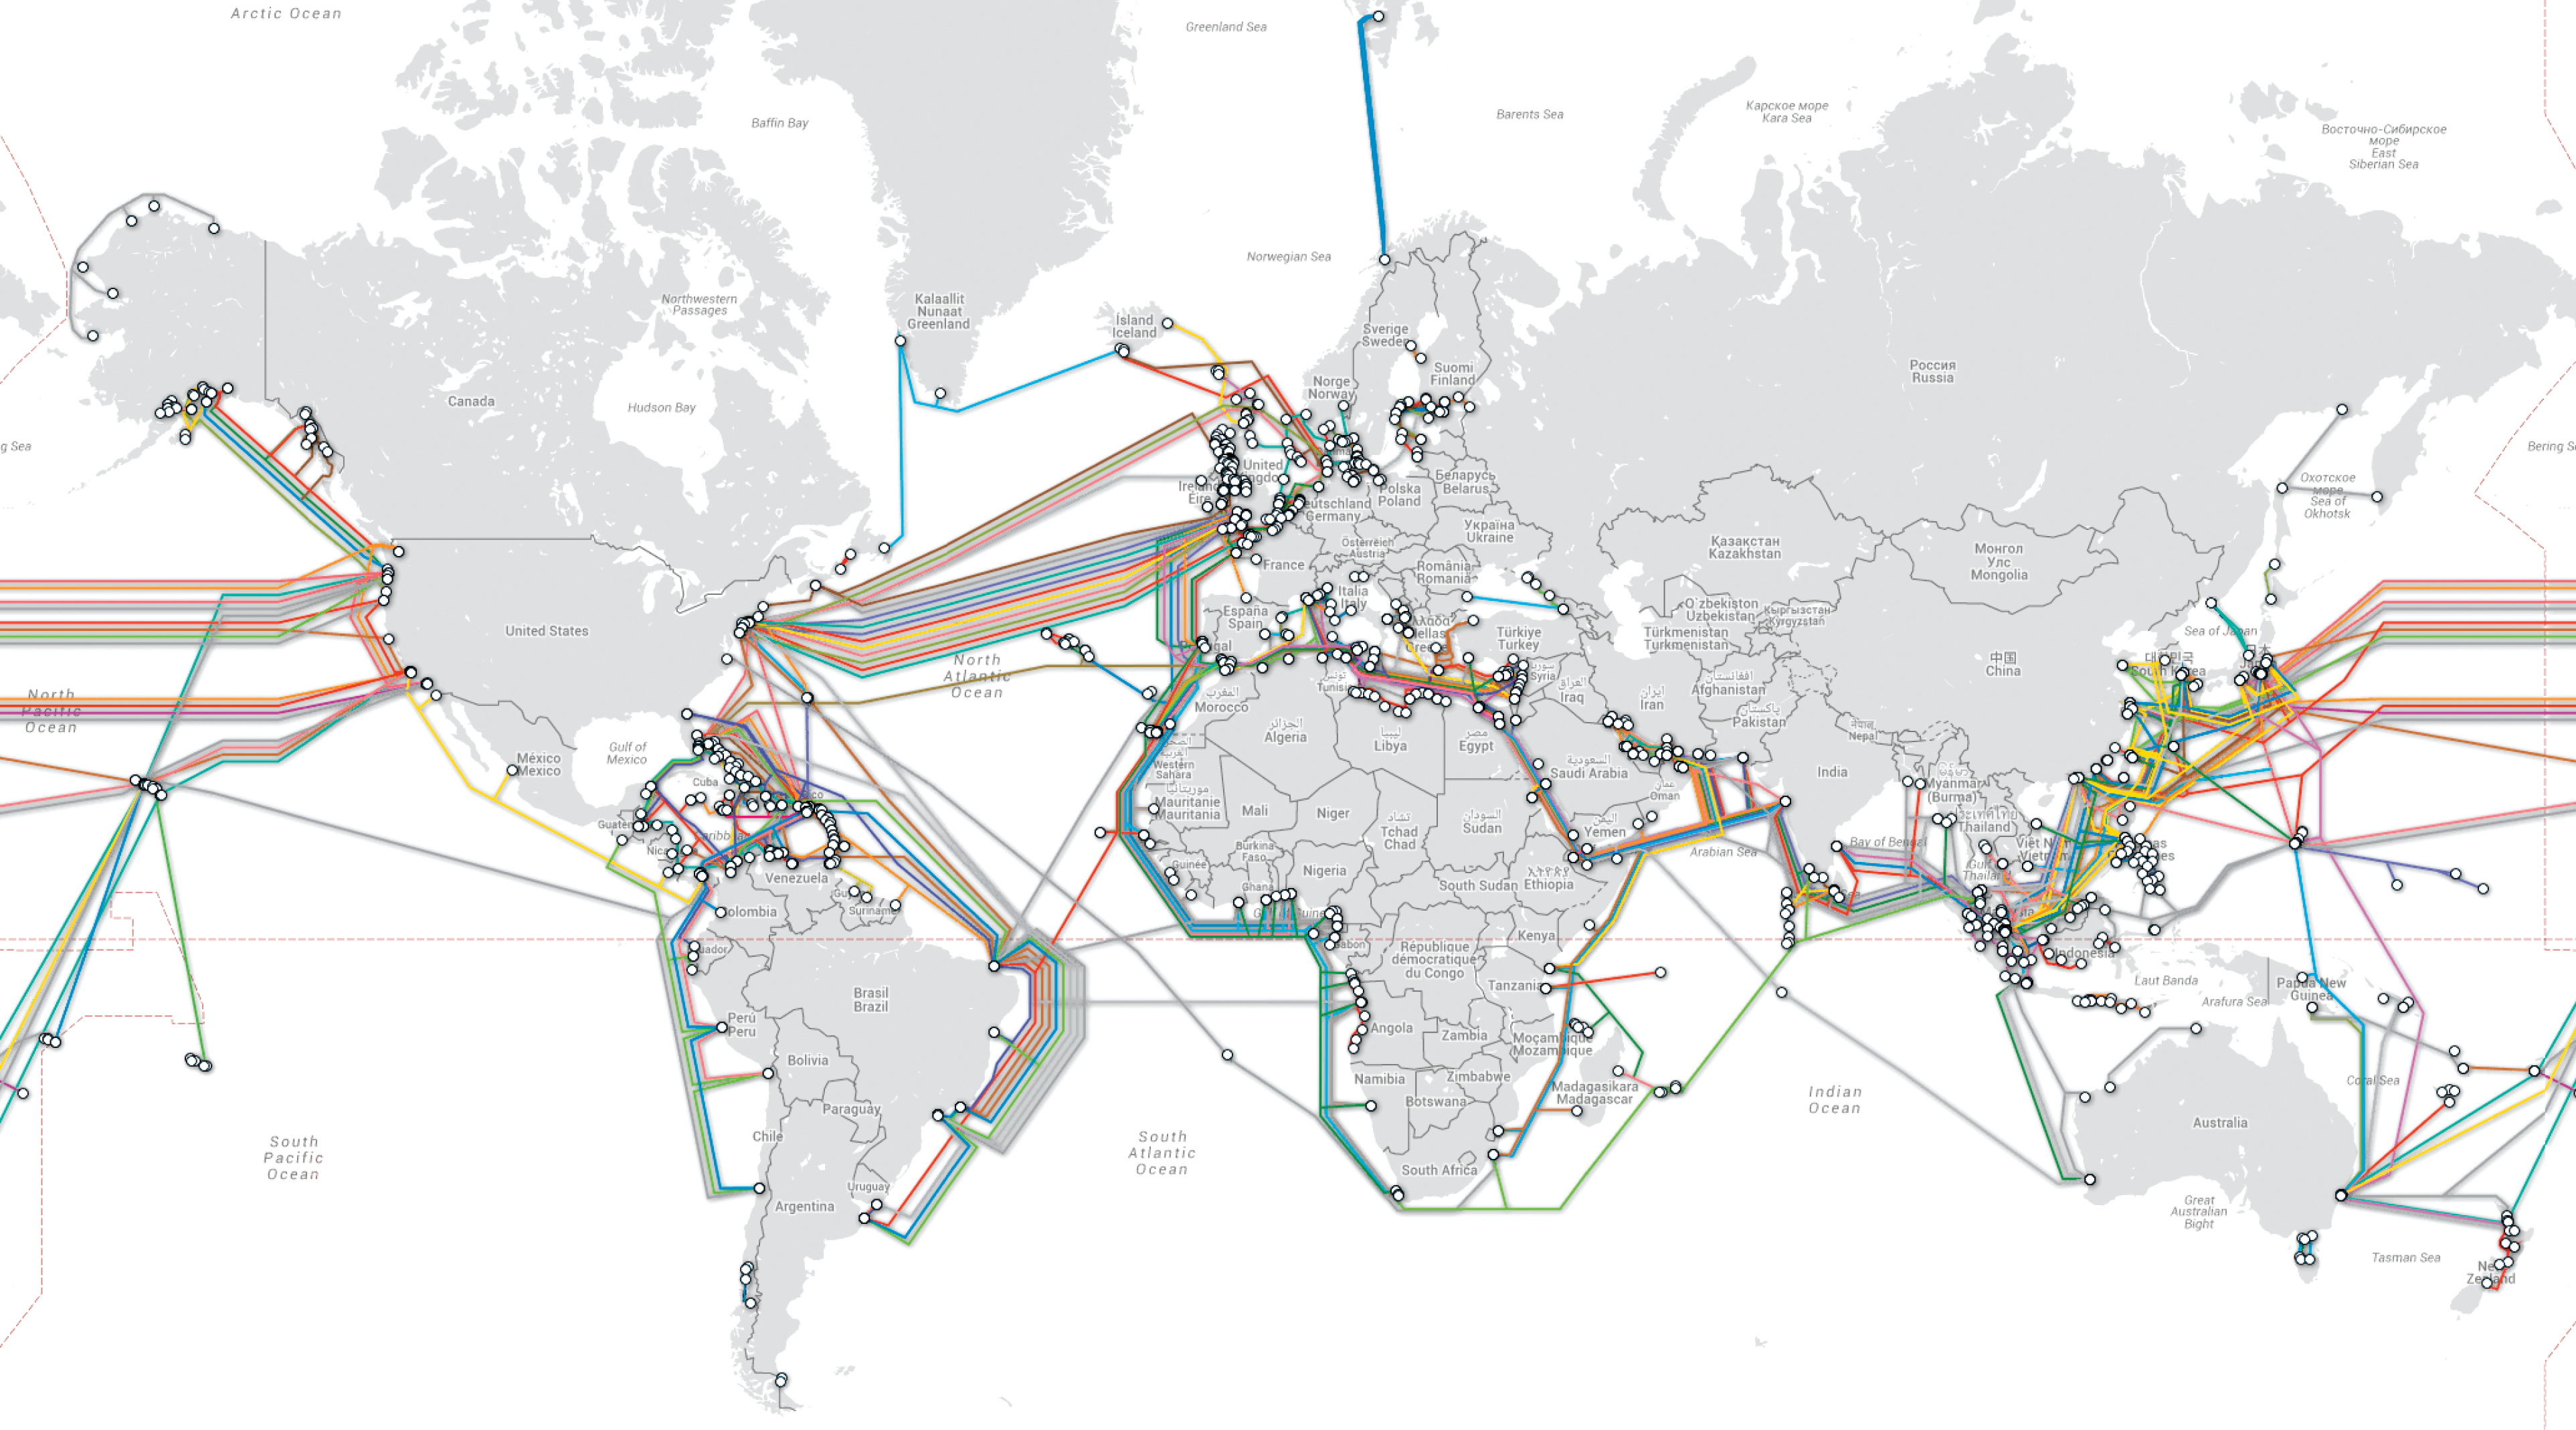 réseaux de câbles sous marins - les câbles sous marins d'internet